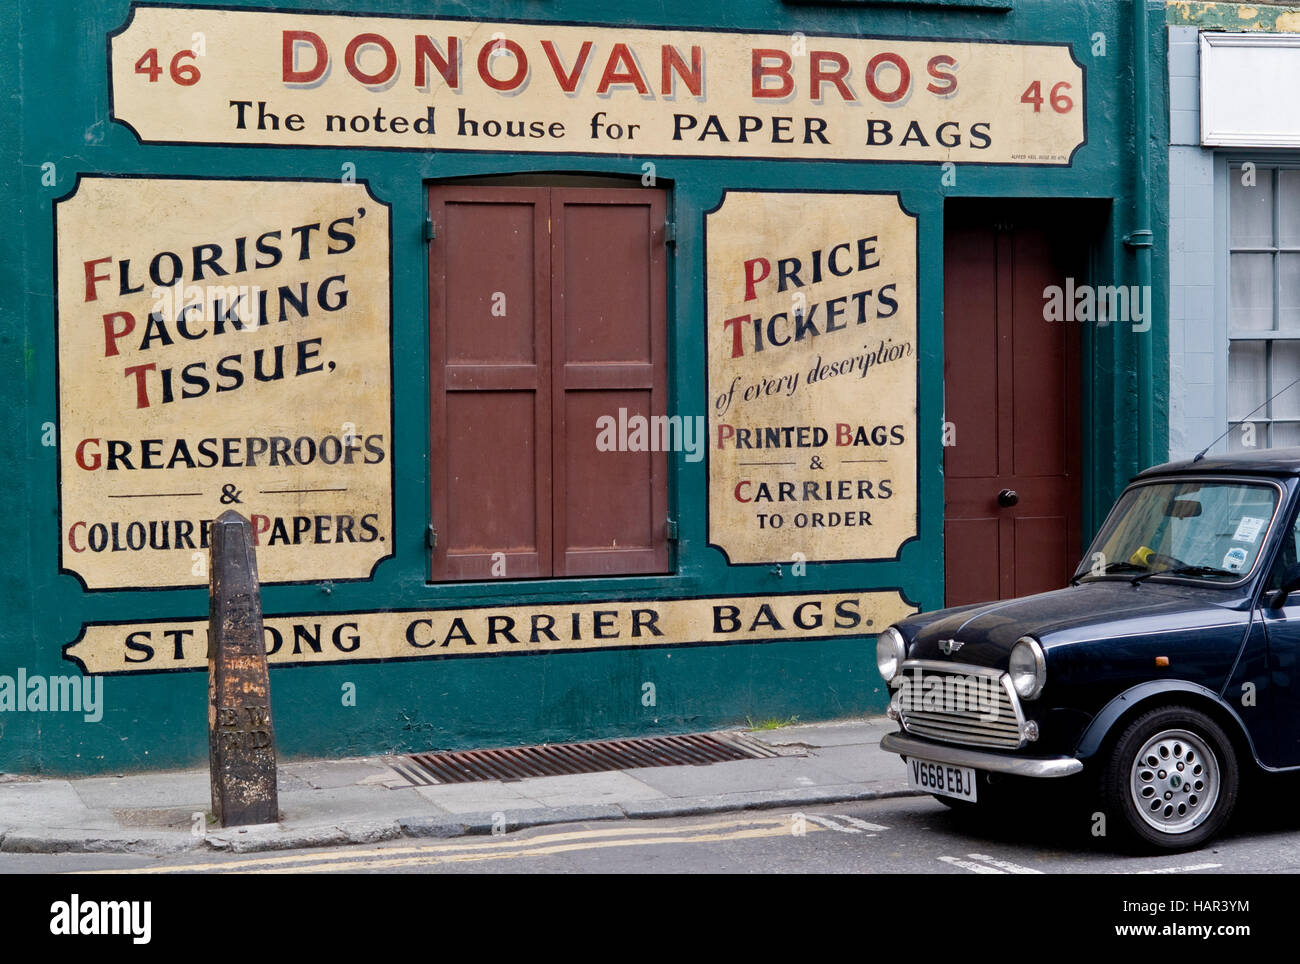 Donovan Brüder Papierfabrik Taschen und Shop geschlossen jetzt Sitz in Crispin Street Spitalfields mit einem Austin Mini außerhalb geparkt Stockfoto